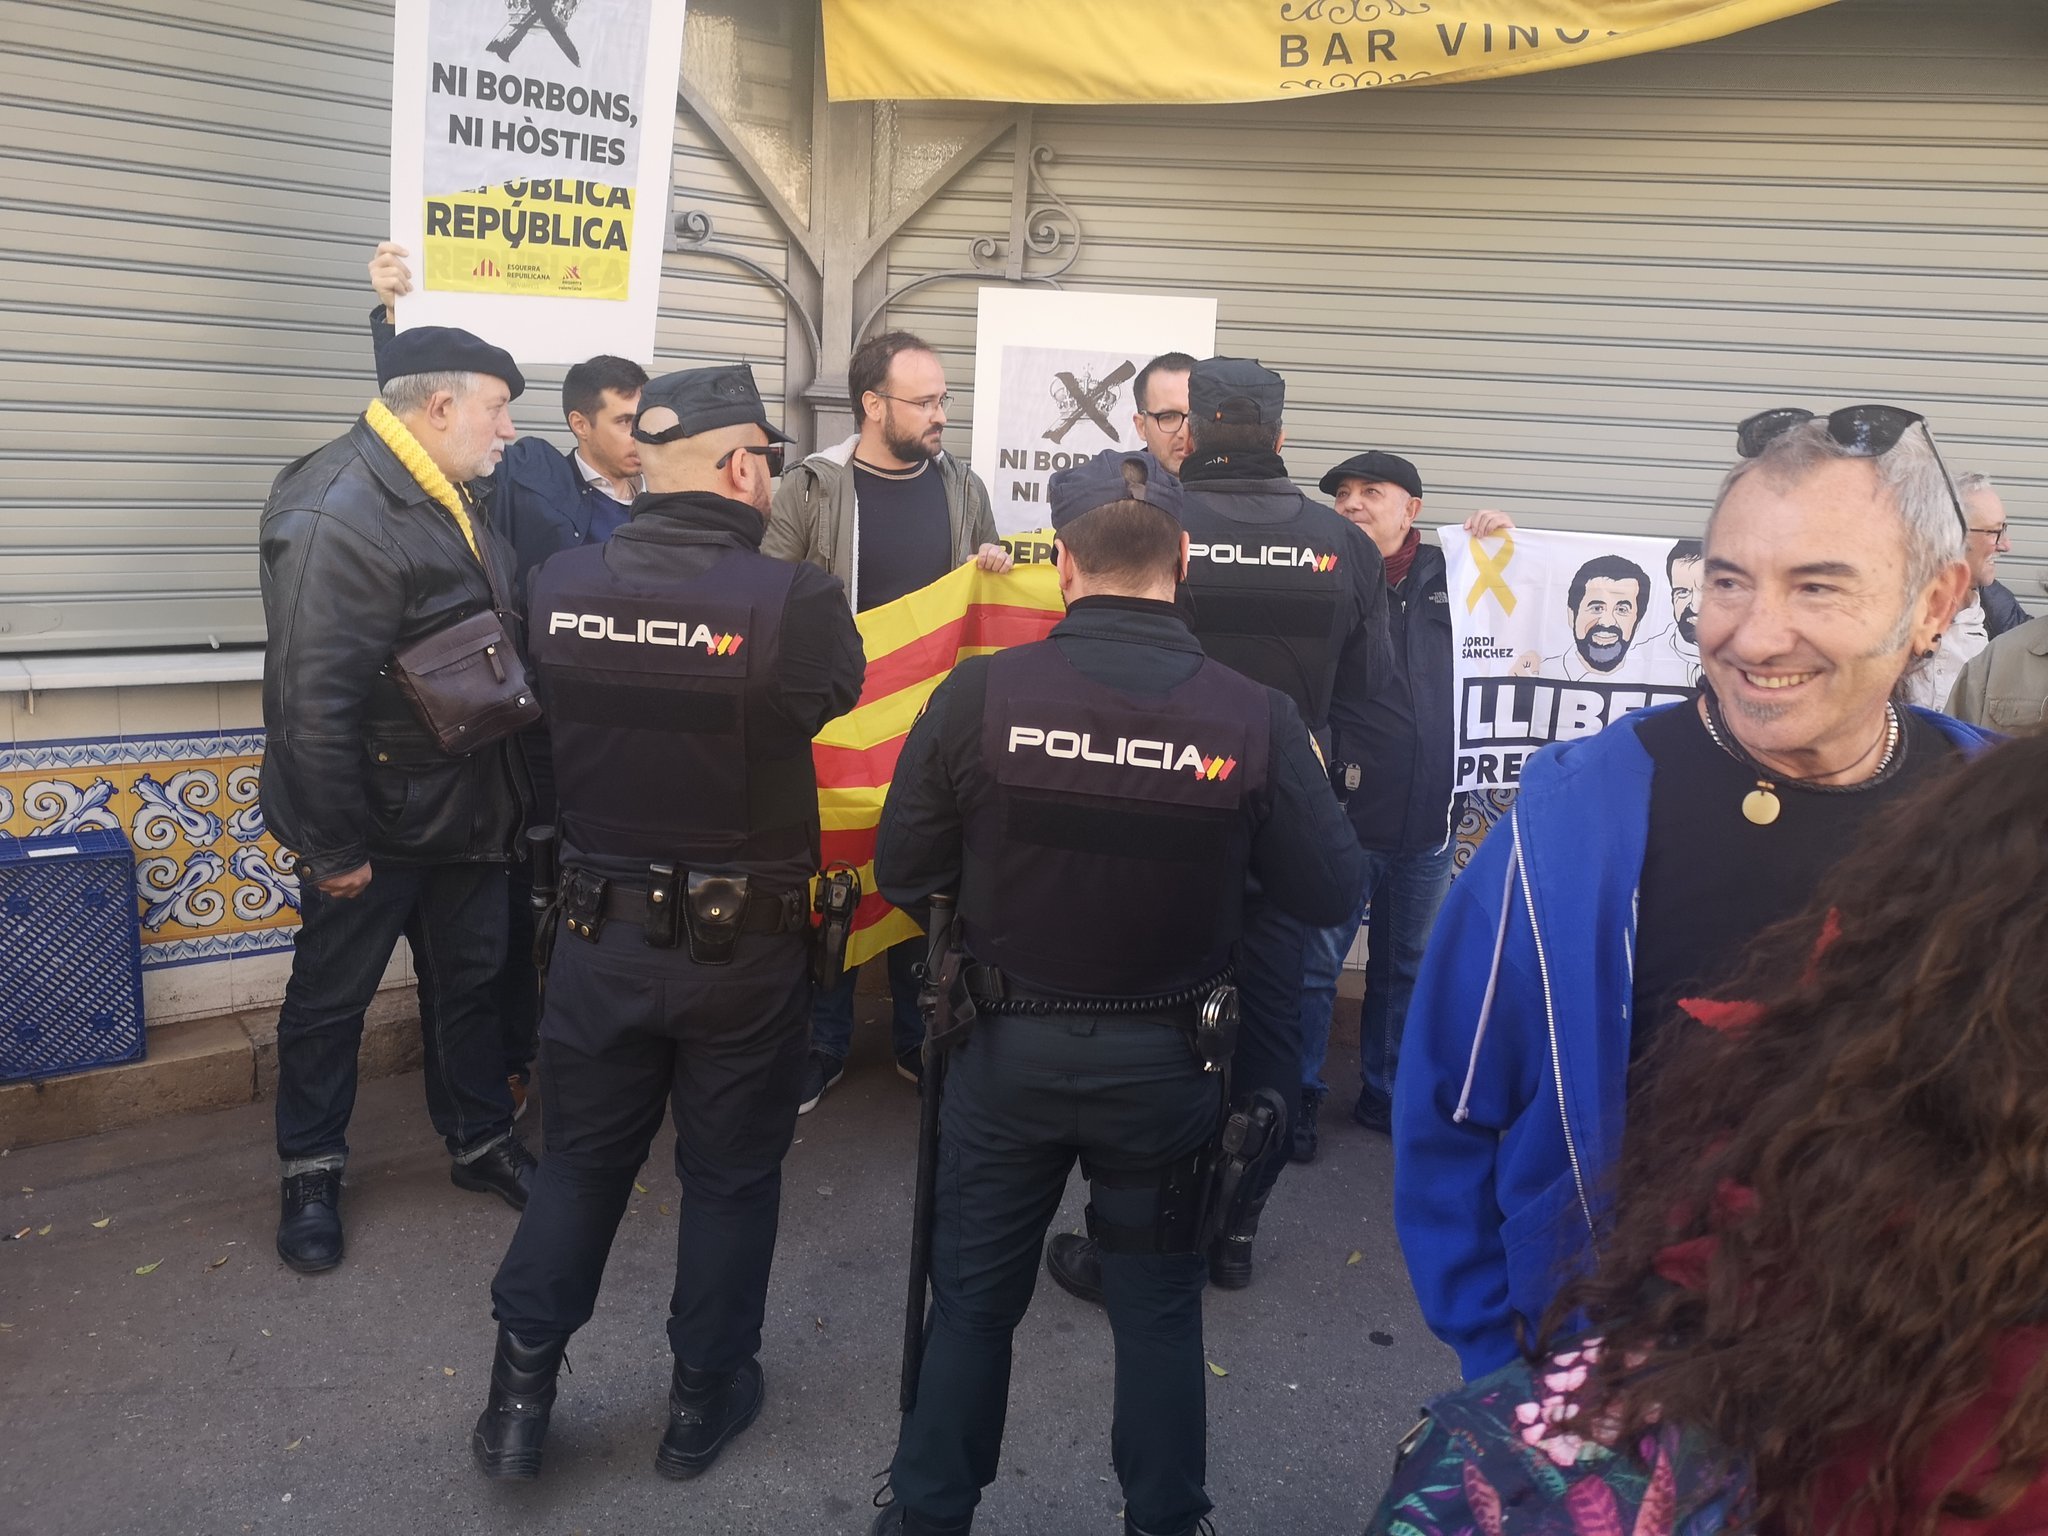 Una protesta contra Felip VI a València acaba amb retencions de la policia